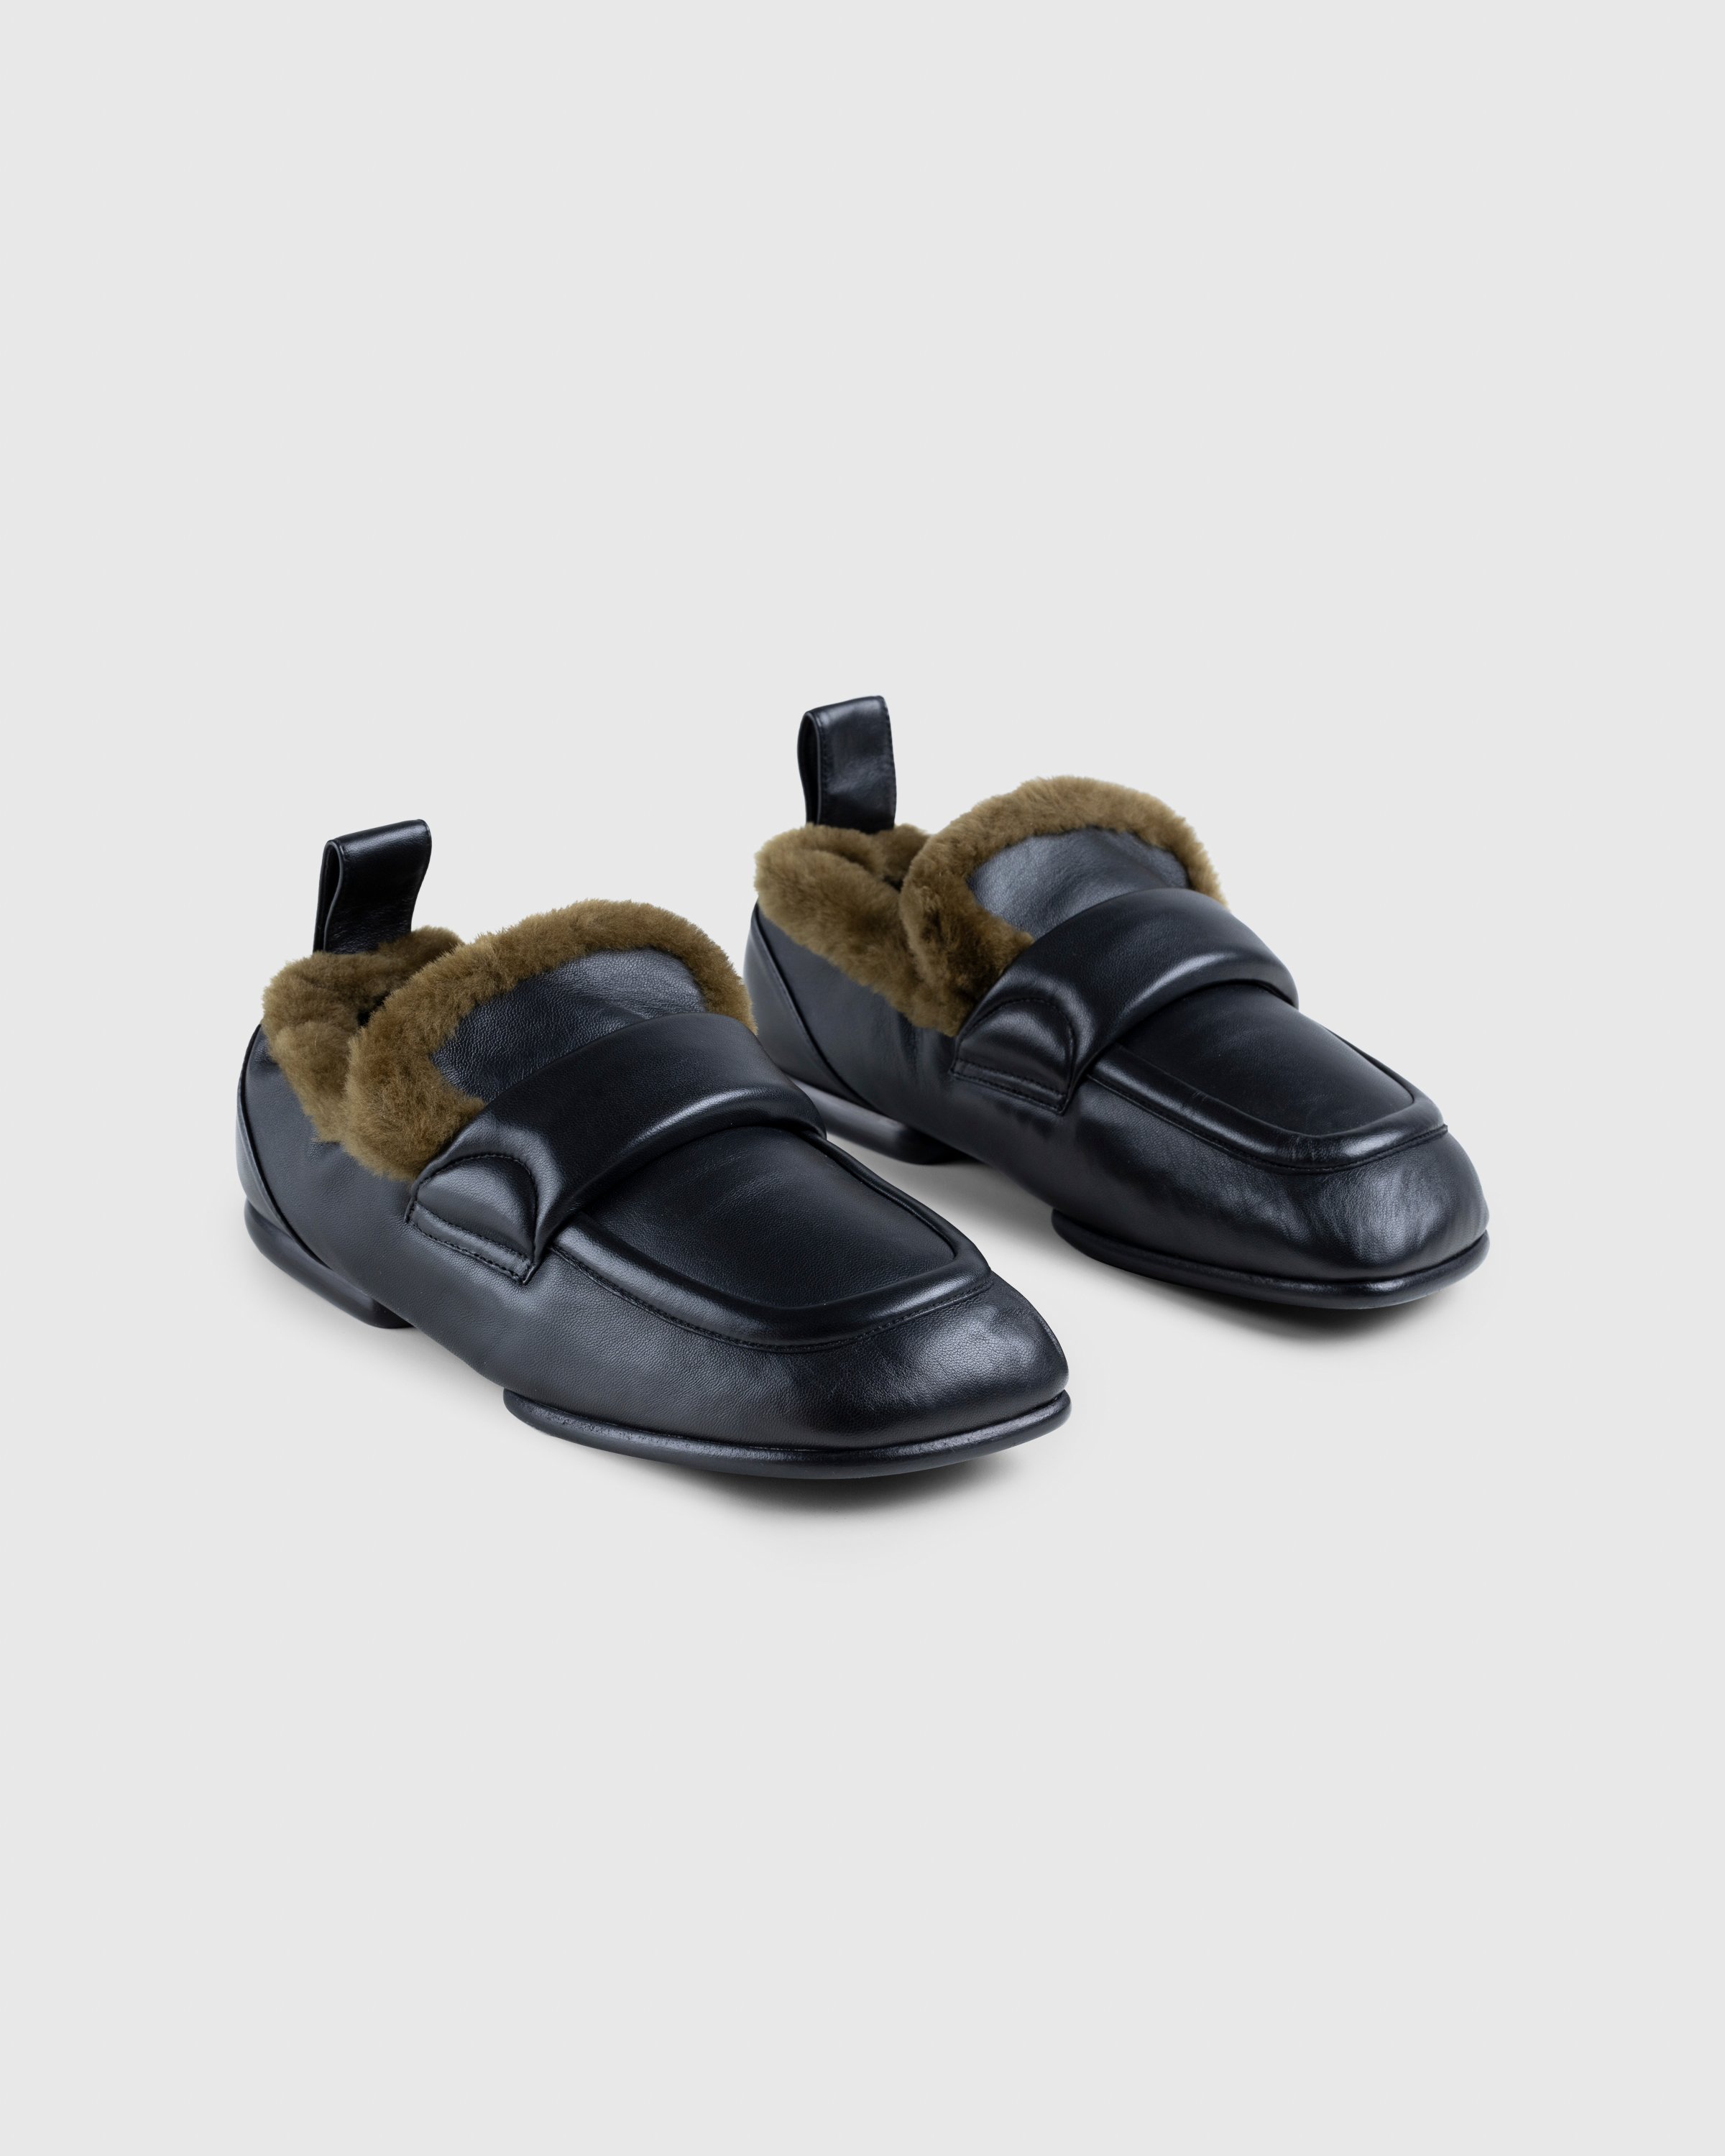 Dries van Noten - Padded Faux Fur Loafers Black - Footwear - Black - Image 3